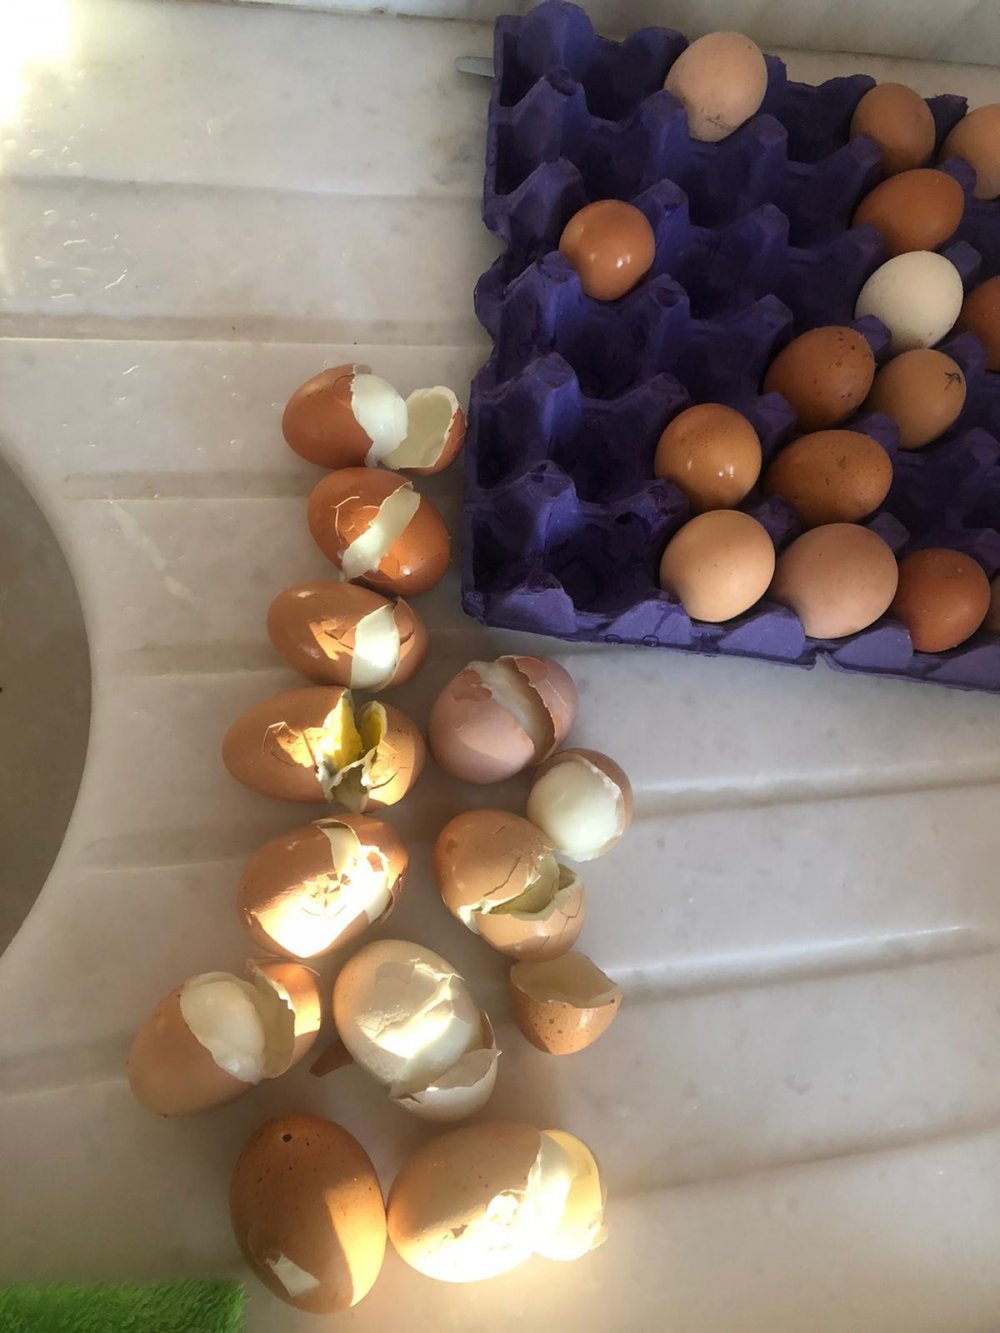 Günyüzü ilçesinde yumurta satışı yapan çifti Halil İbrahim Olçay’ın müşterilere gönderdiği yumurtaların tamamı haşlanmış çıktı.